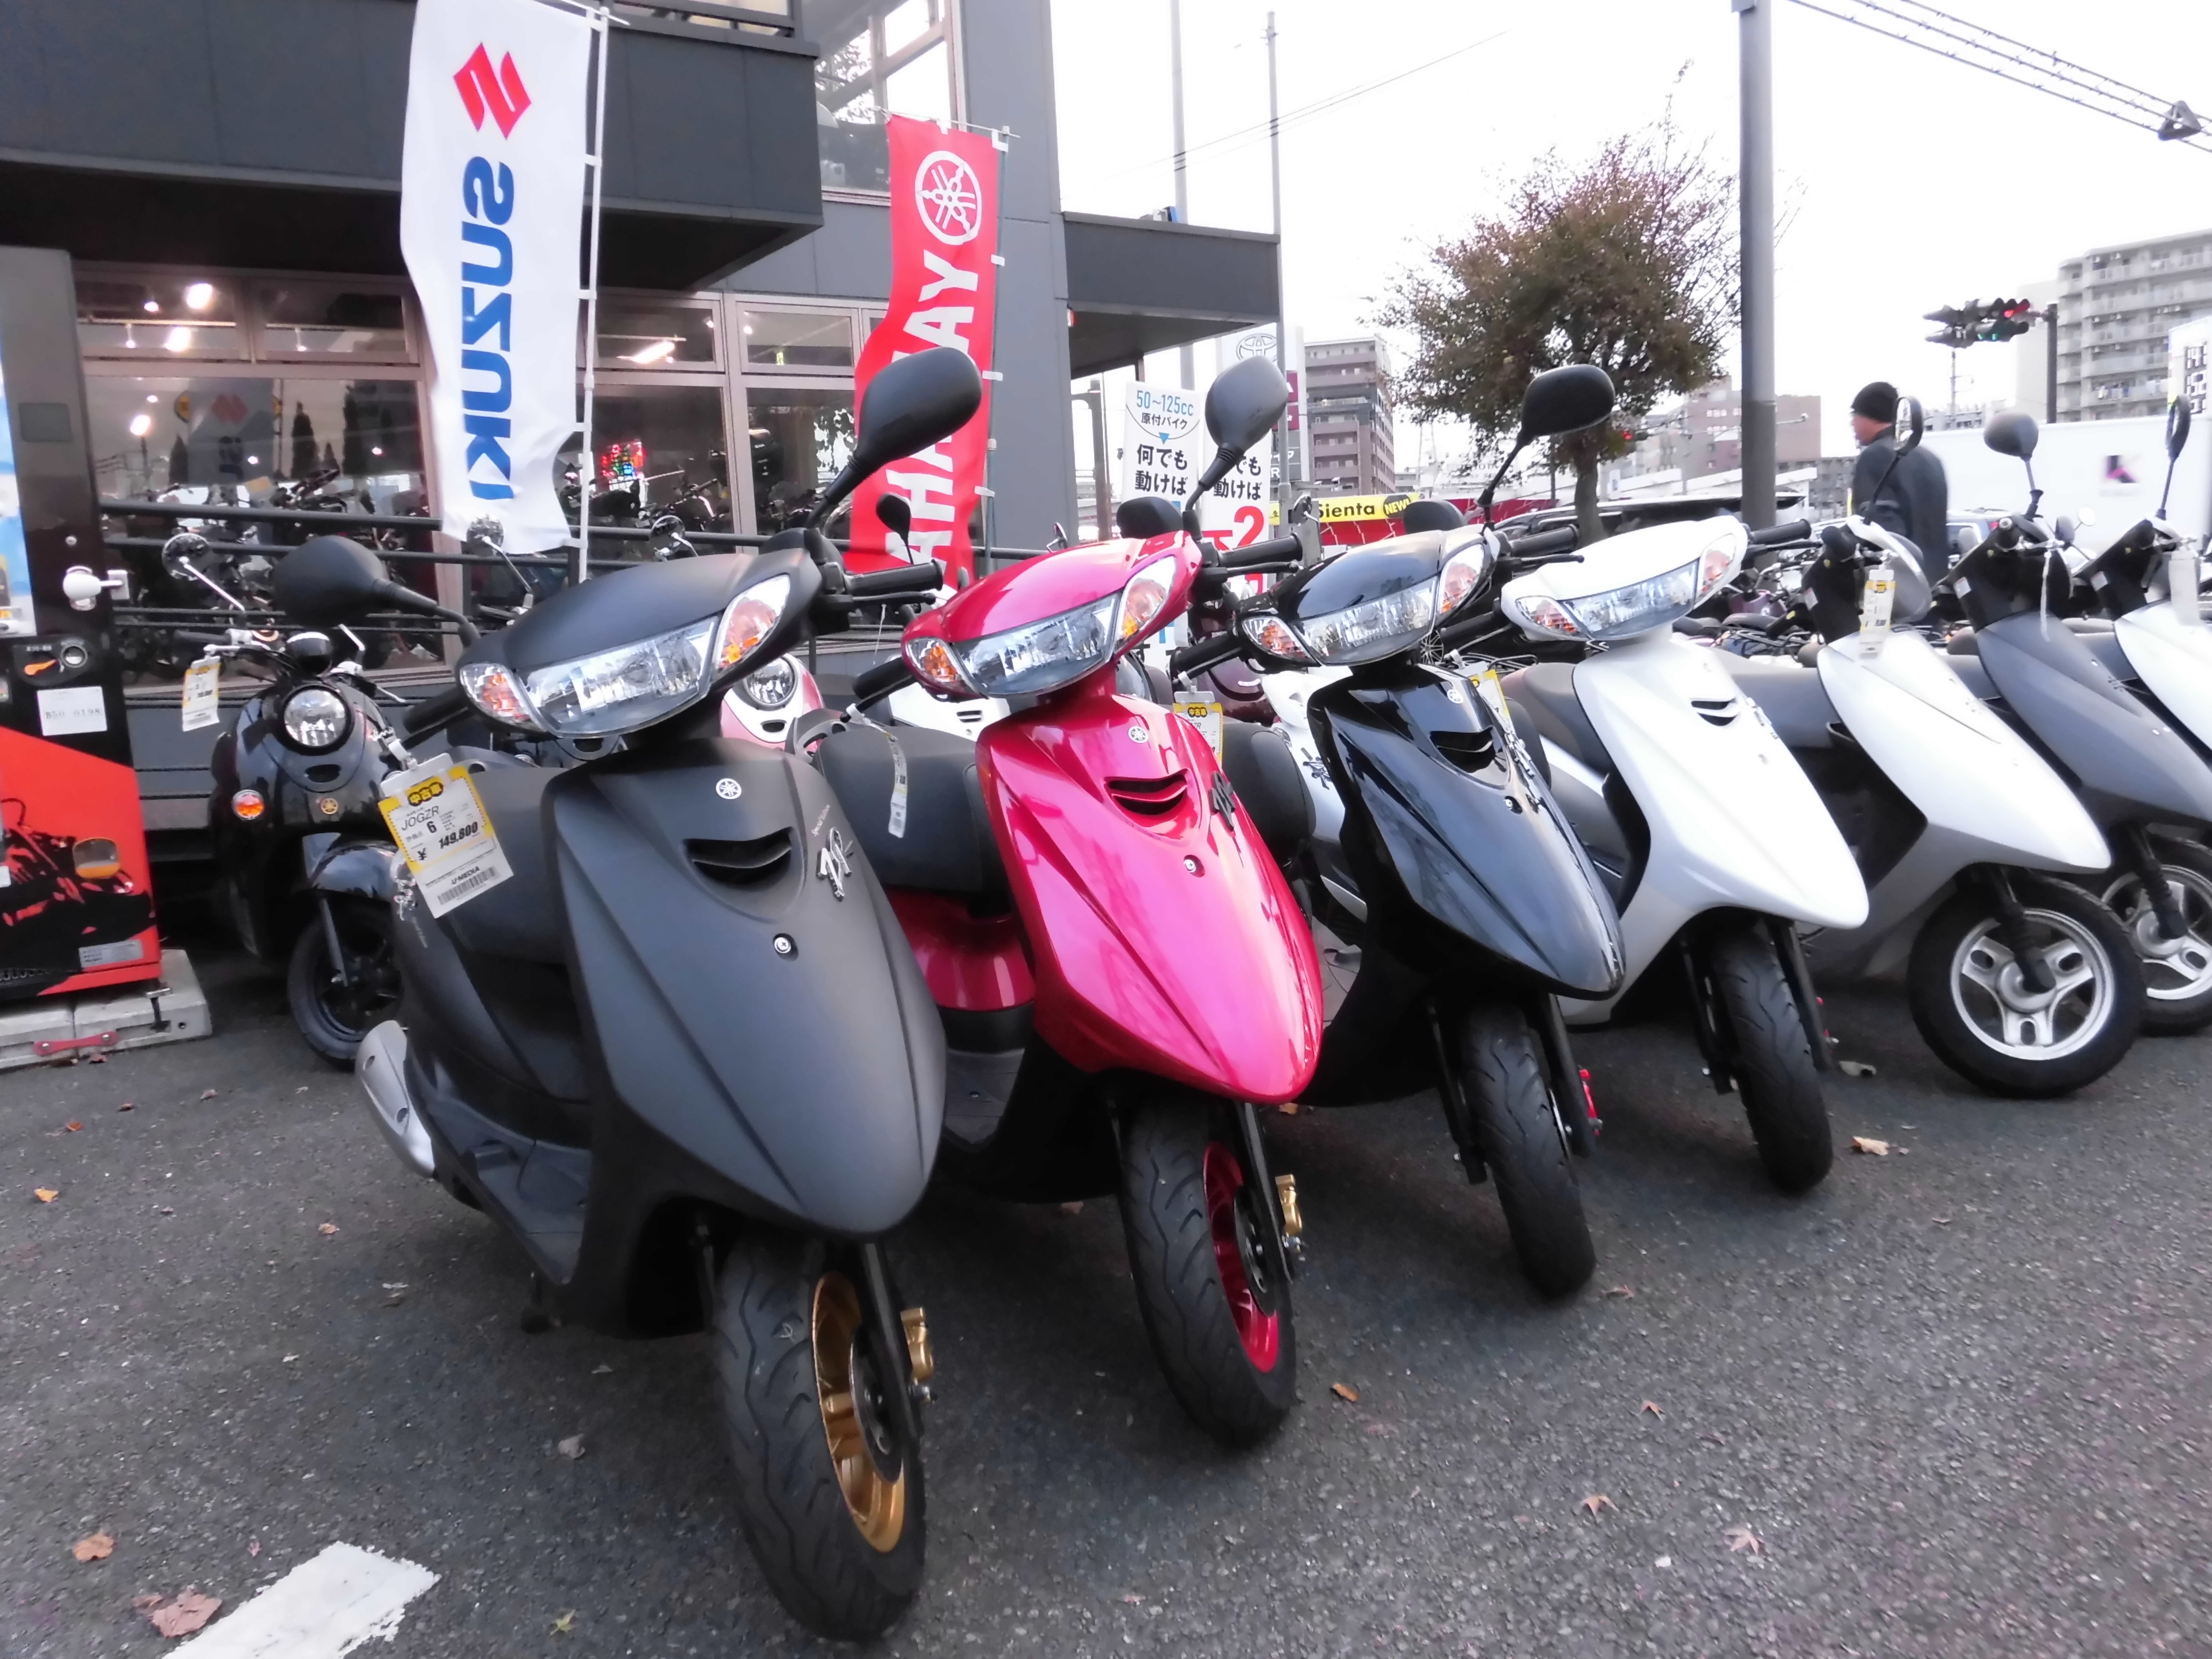 ジョグzr 最新情報 U Media ユーメディア 中古バイク 新車バイク探しの決定版 神奈川 東京でバイク探すならユーメディア